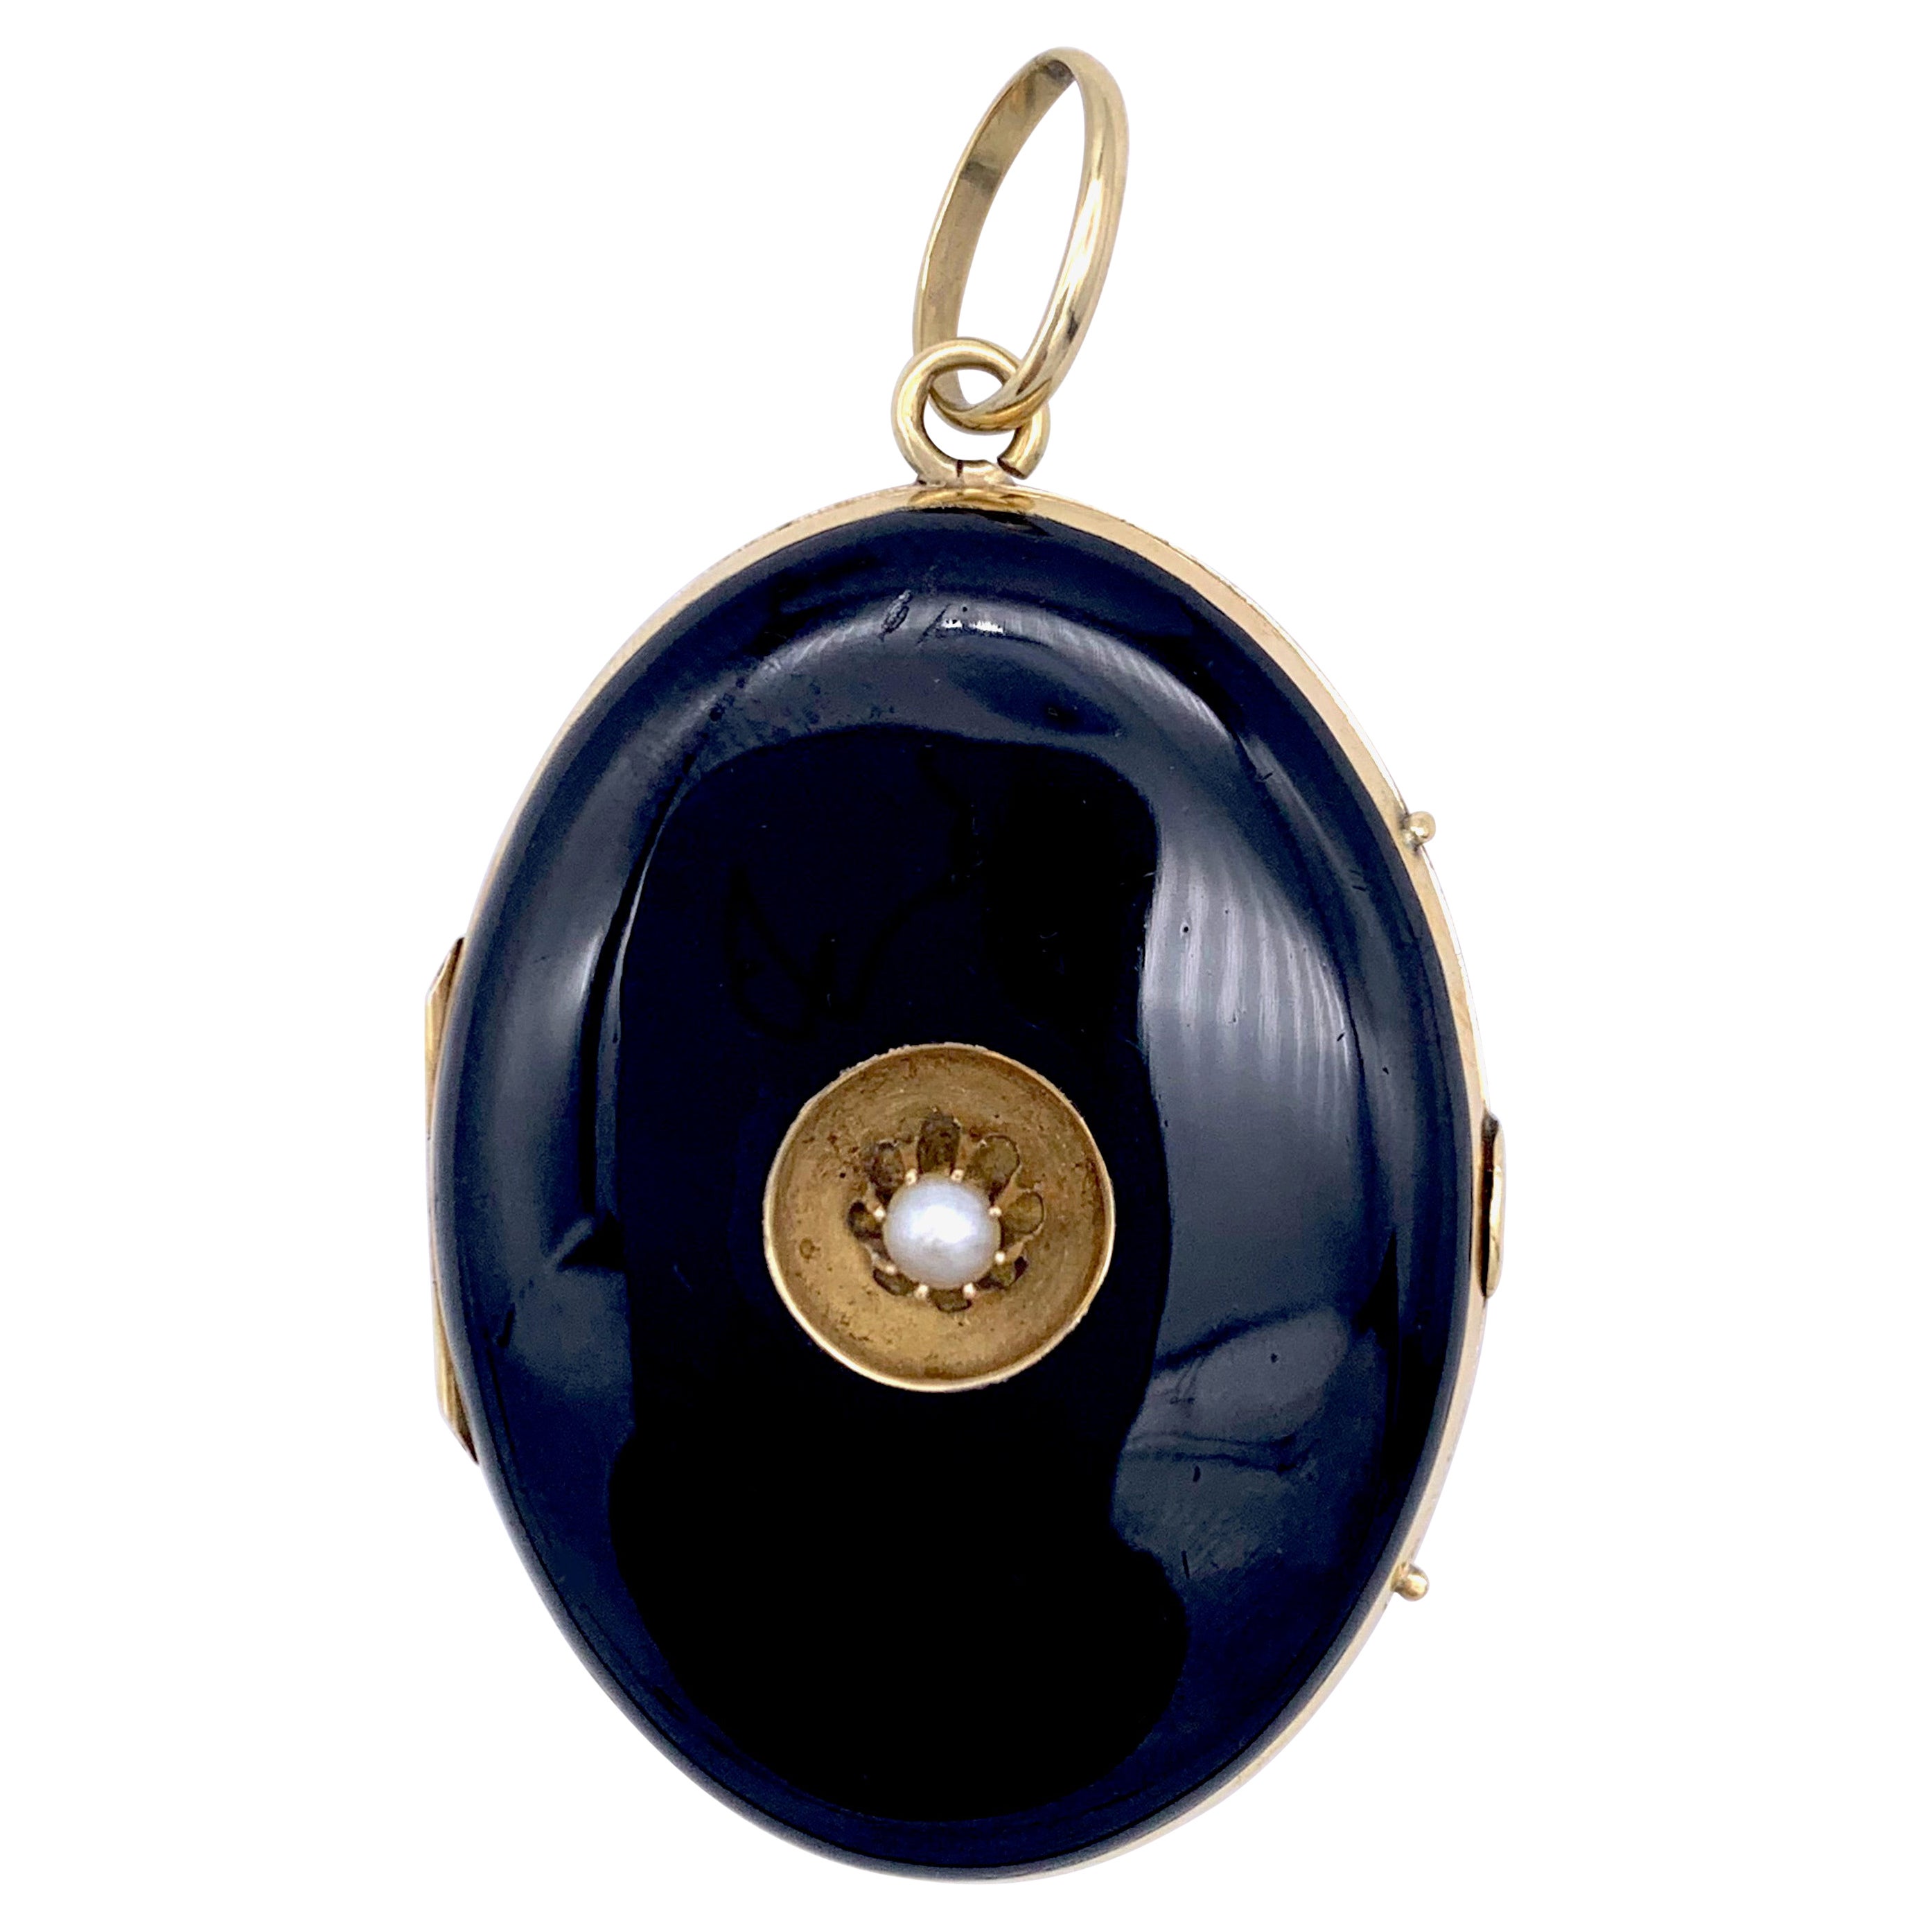 Antique 14 Karat Oval Gold Locket Pendant Natural Pearl For Sale